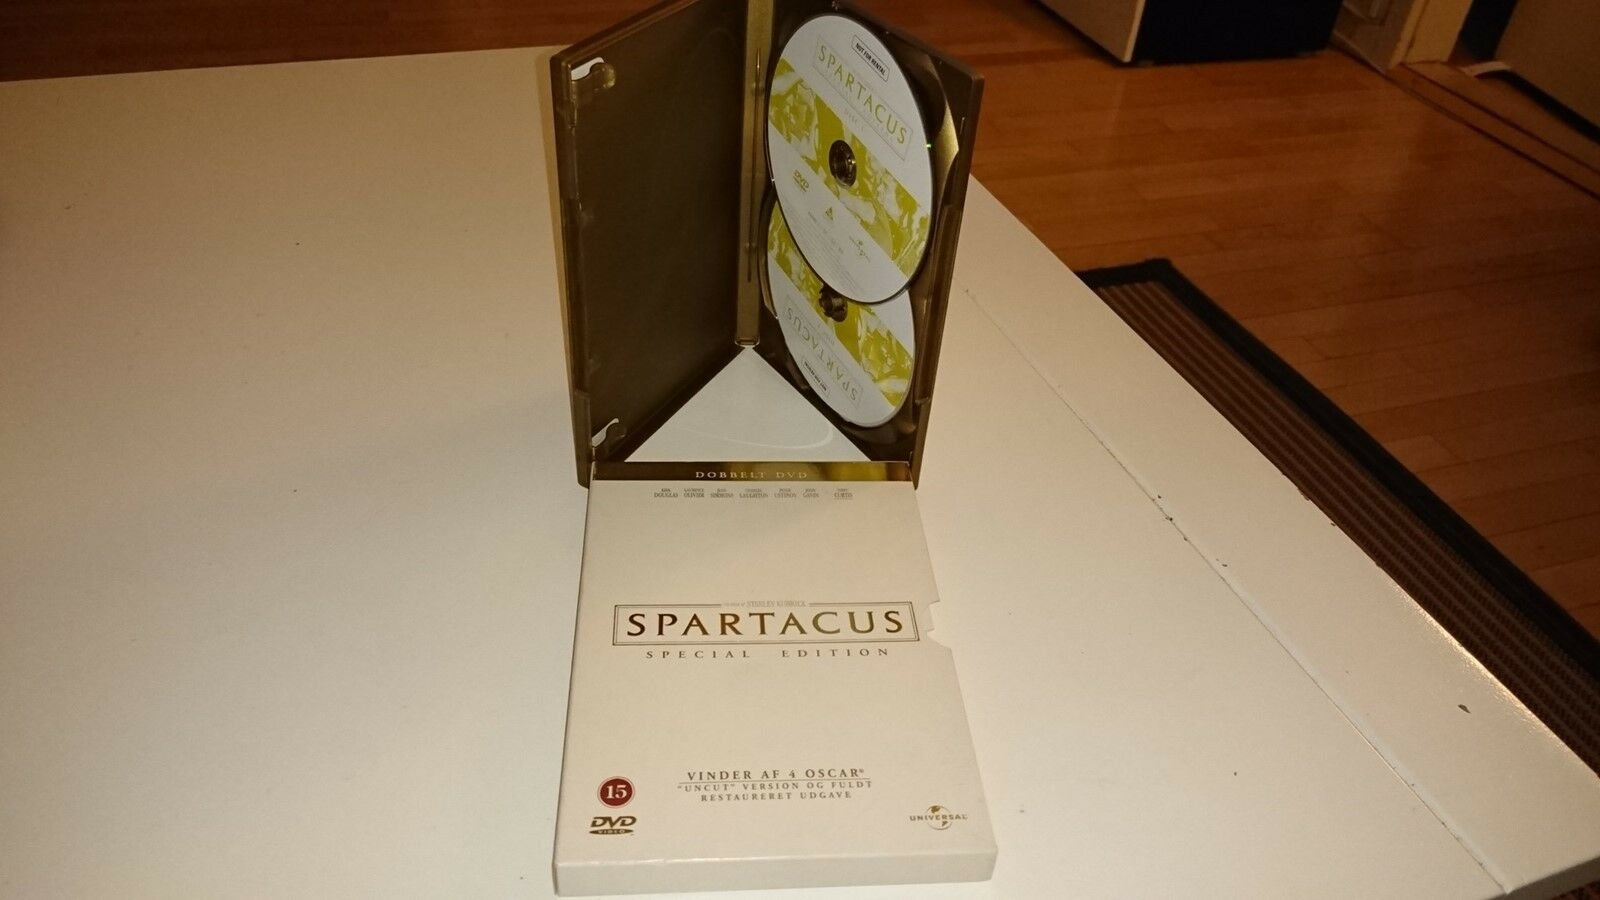 Spartacus, DVD, drama